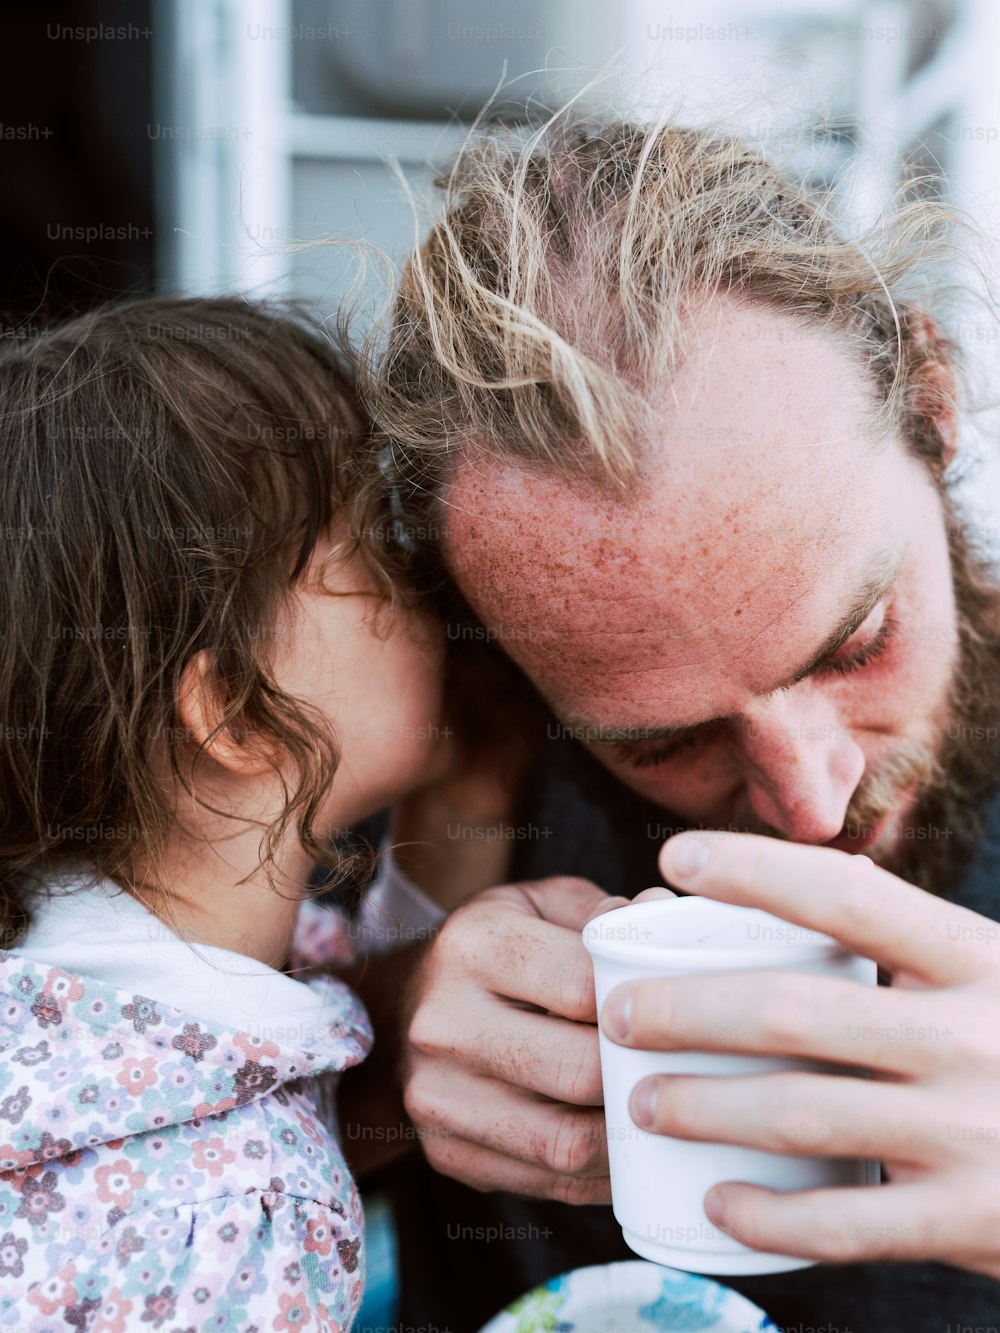 Un hombre y una niña bebiendo de una taza